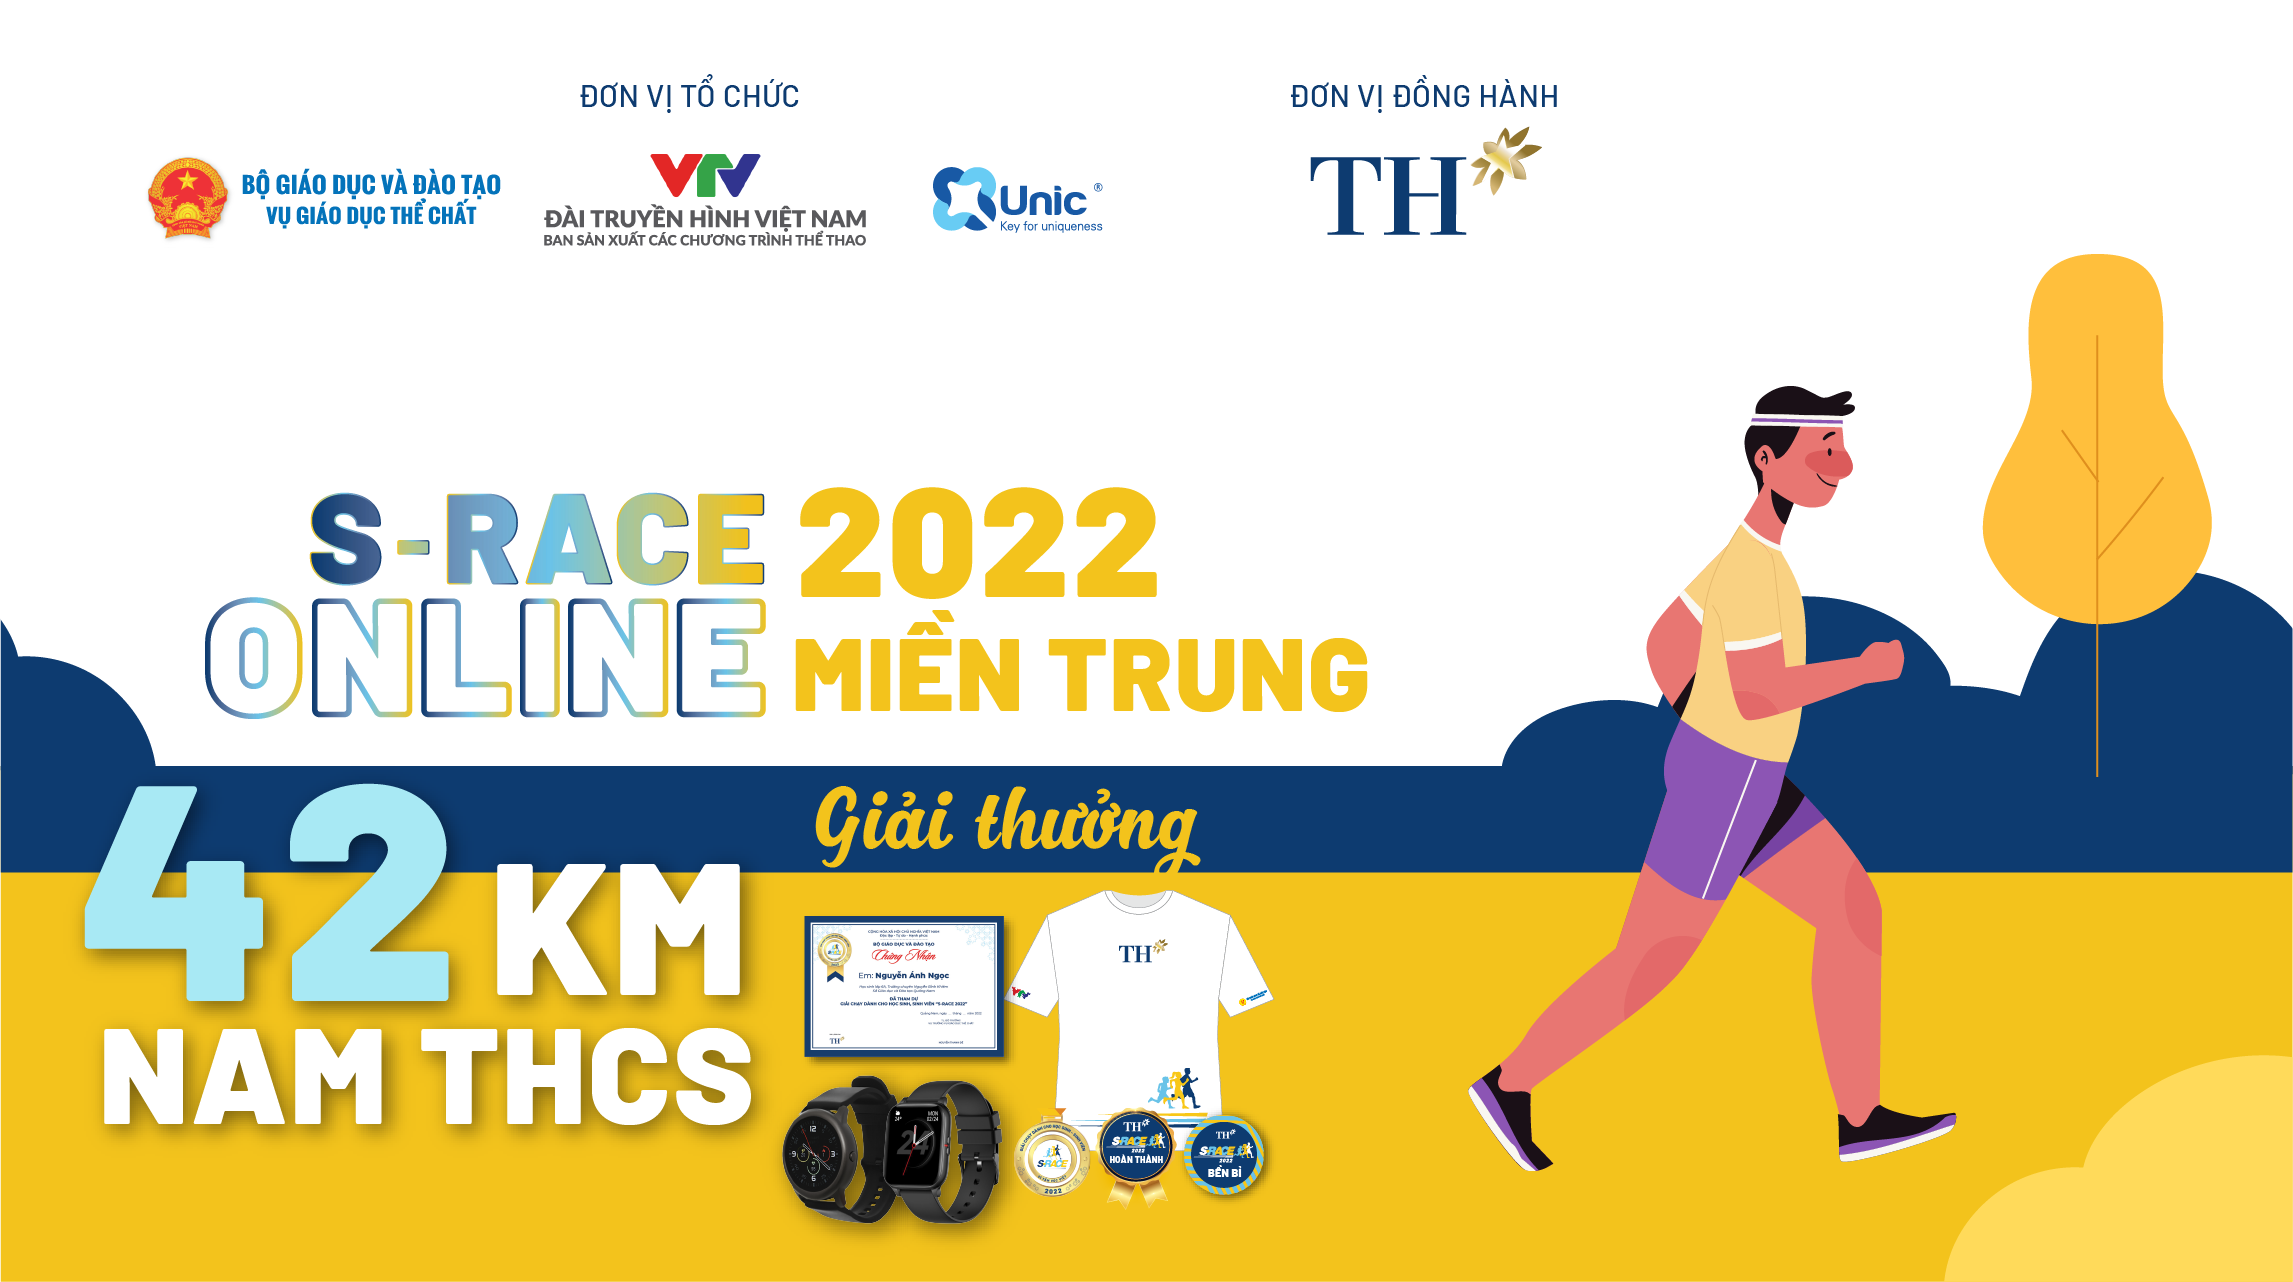 42 KM NAM THCS (S-Race Online miền Trung) - Thử thách chạy bộ - Unlimited Chain